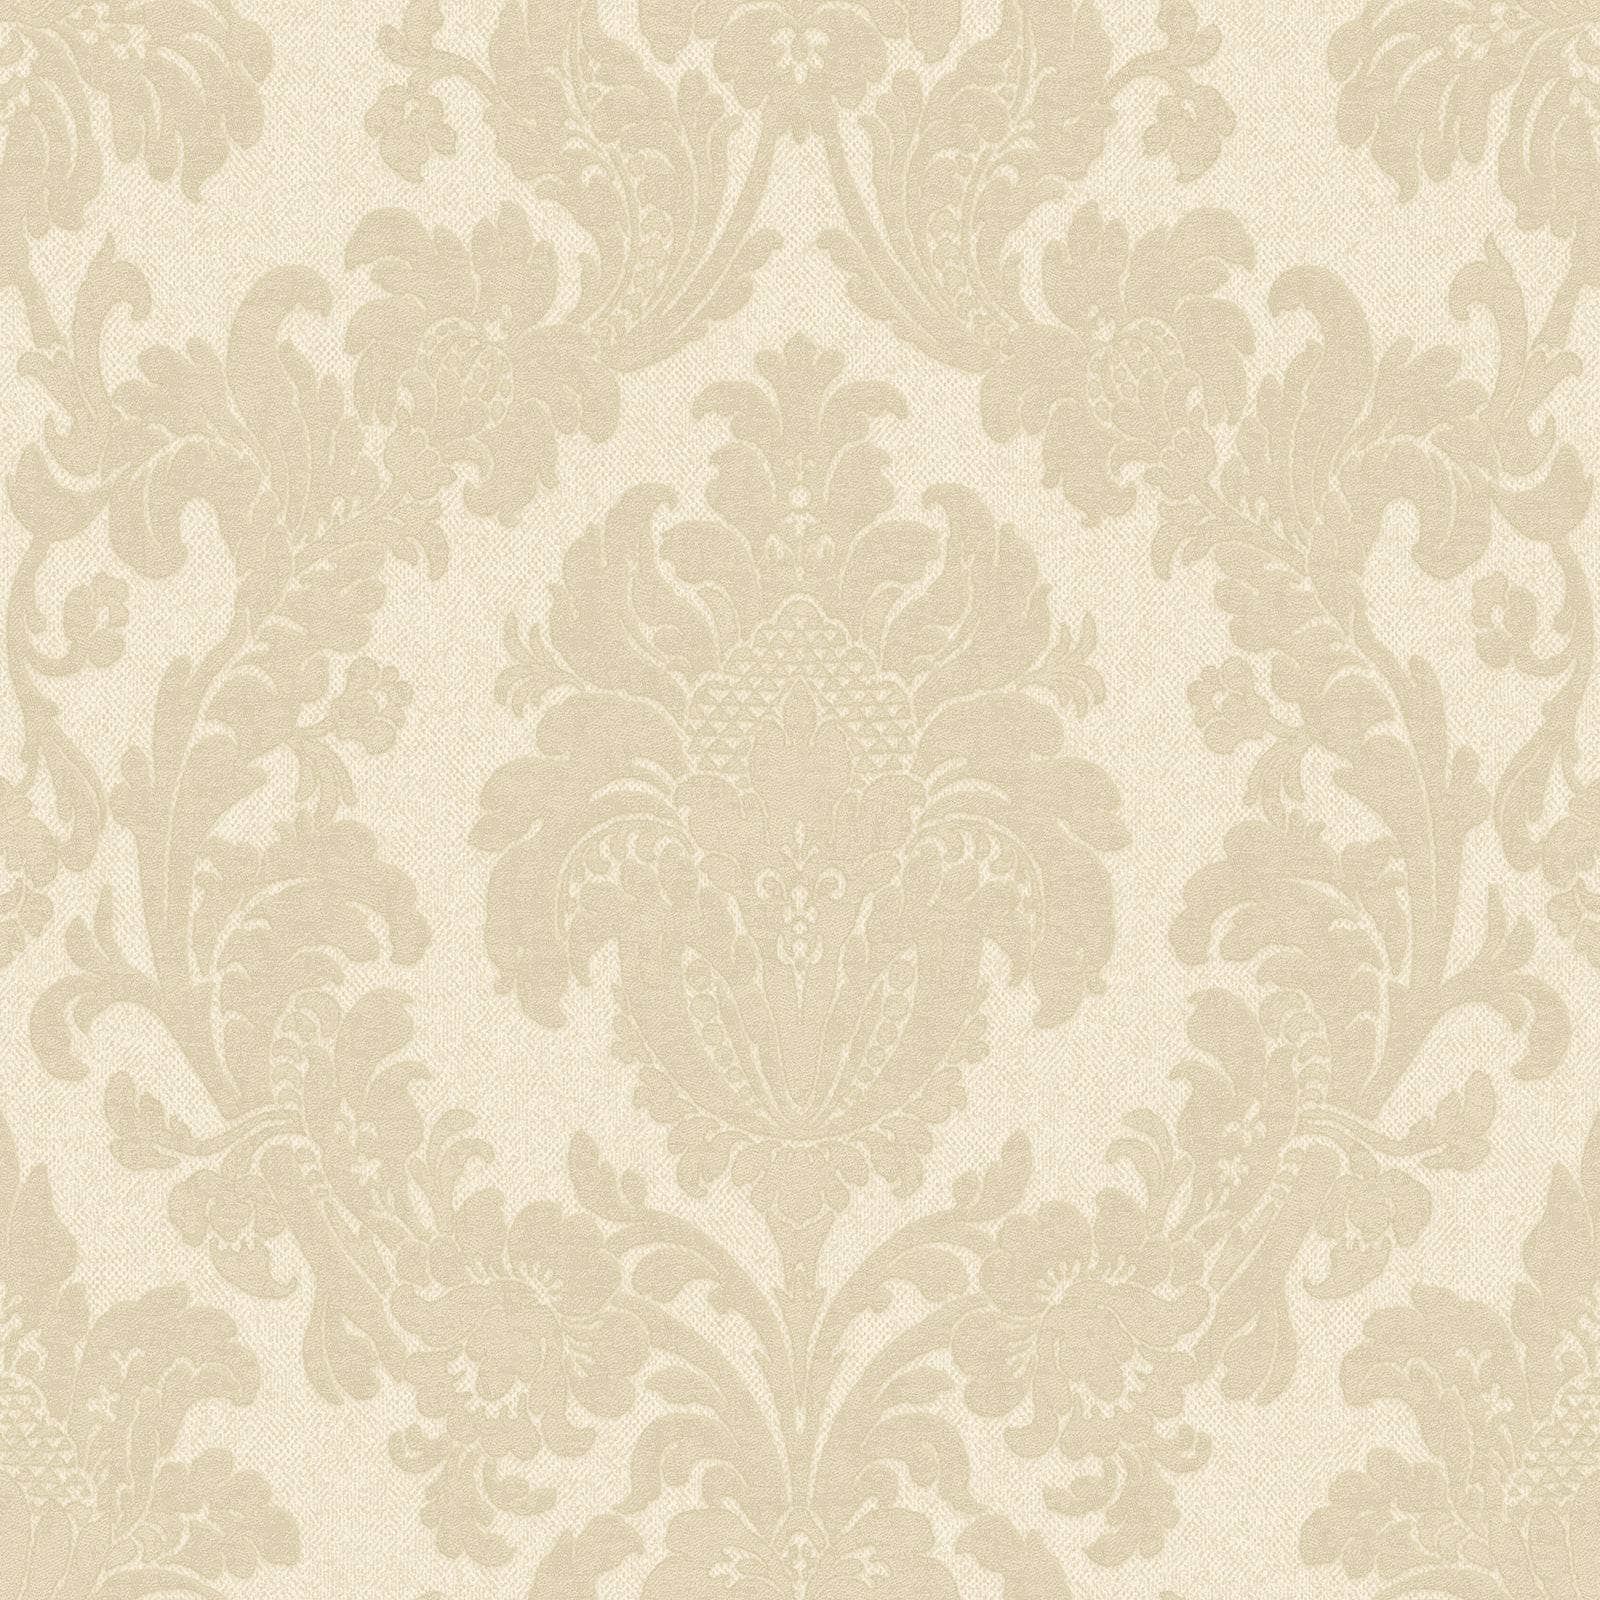 Wallpaper  -  Belgravia Ciara Damask Cream Wallpaper - 4408  -  60009423